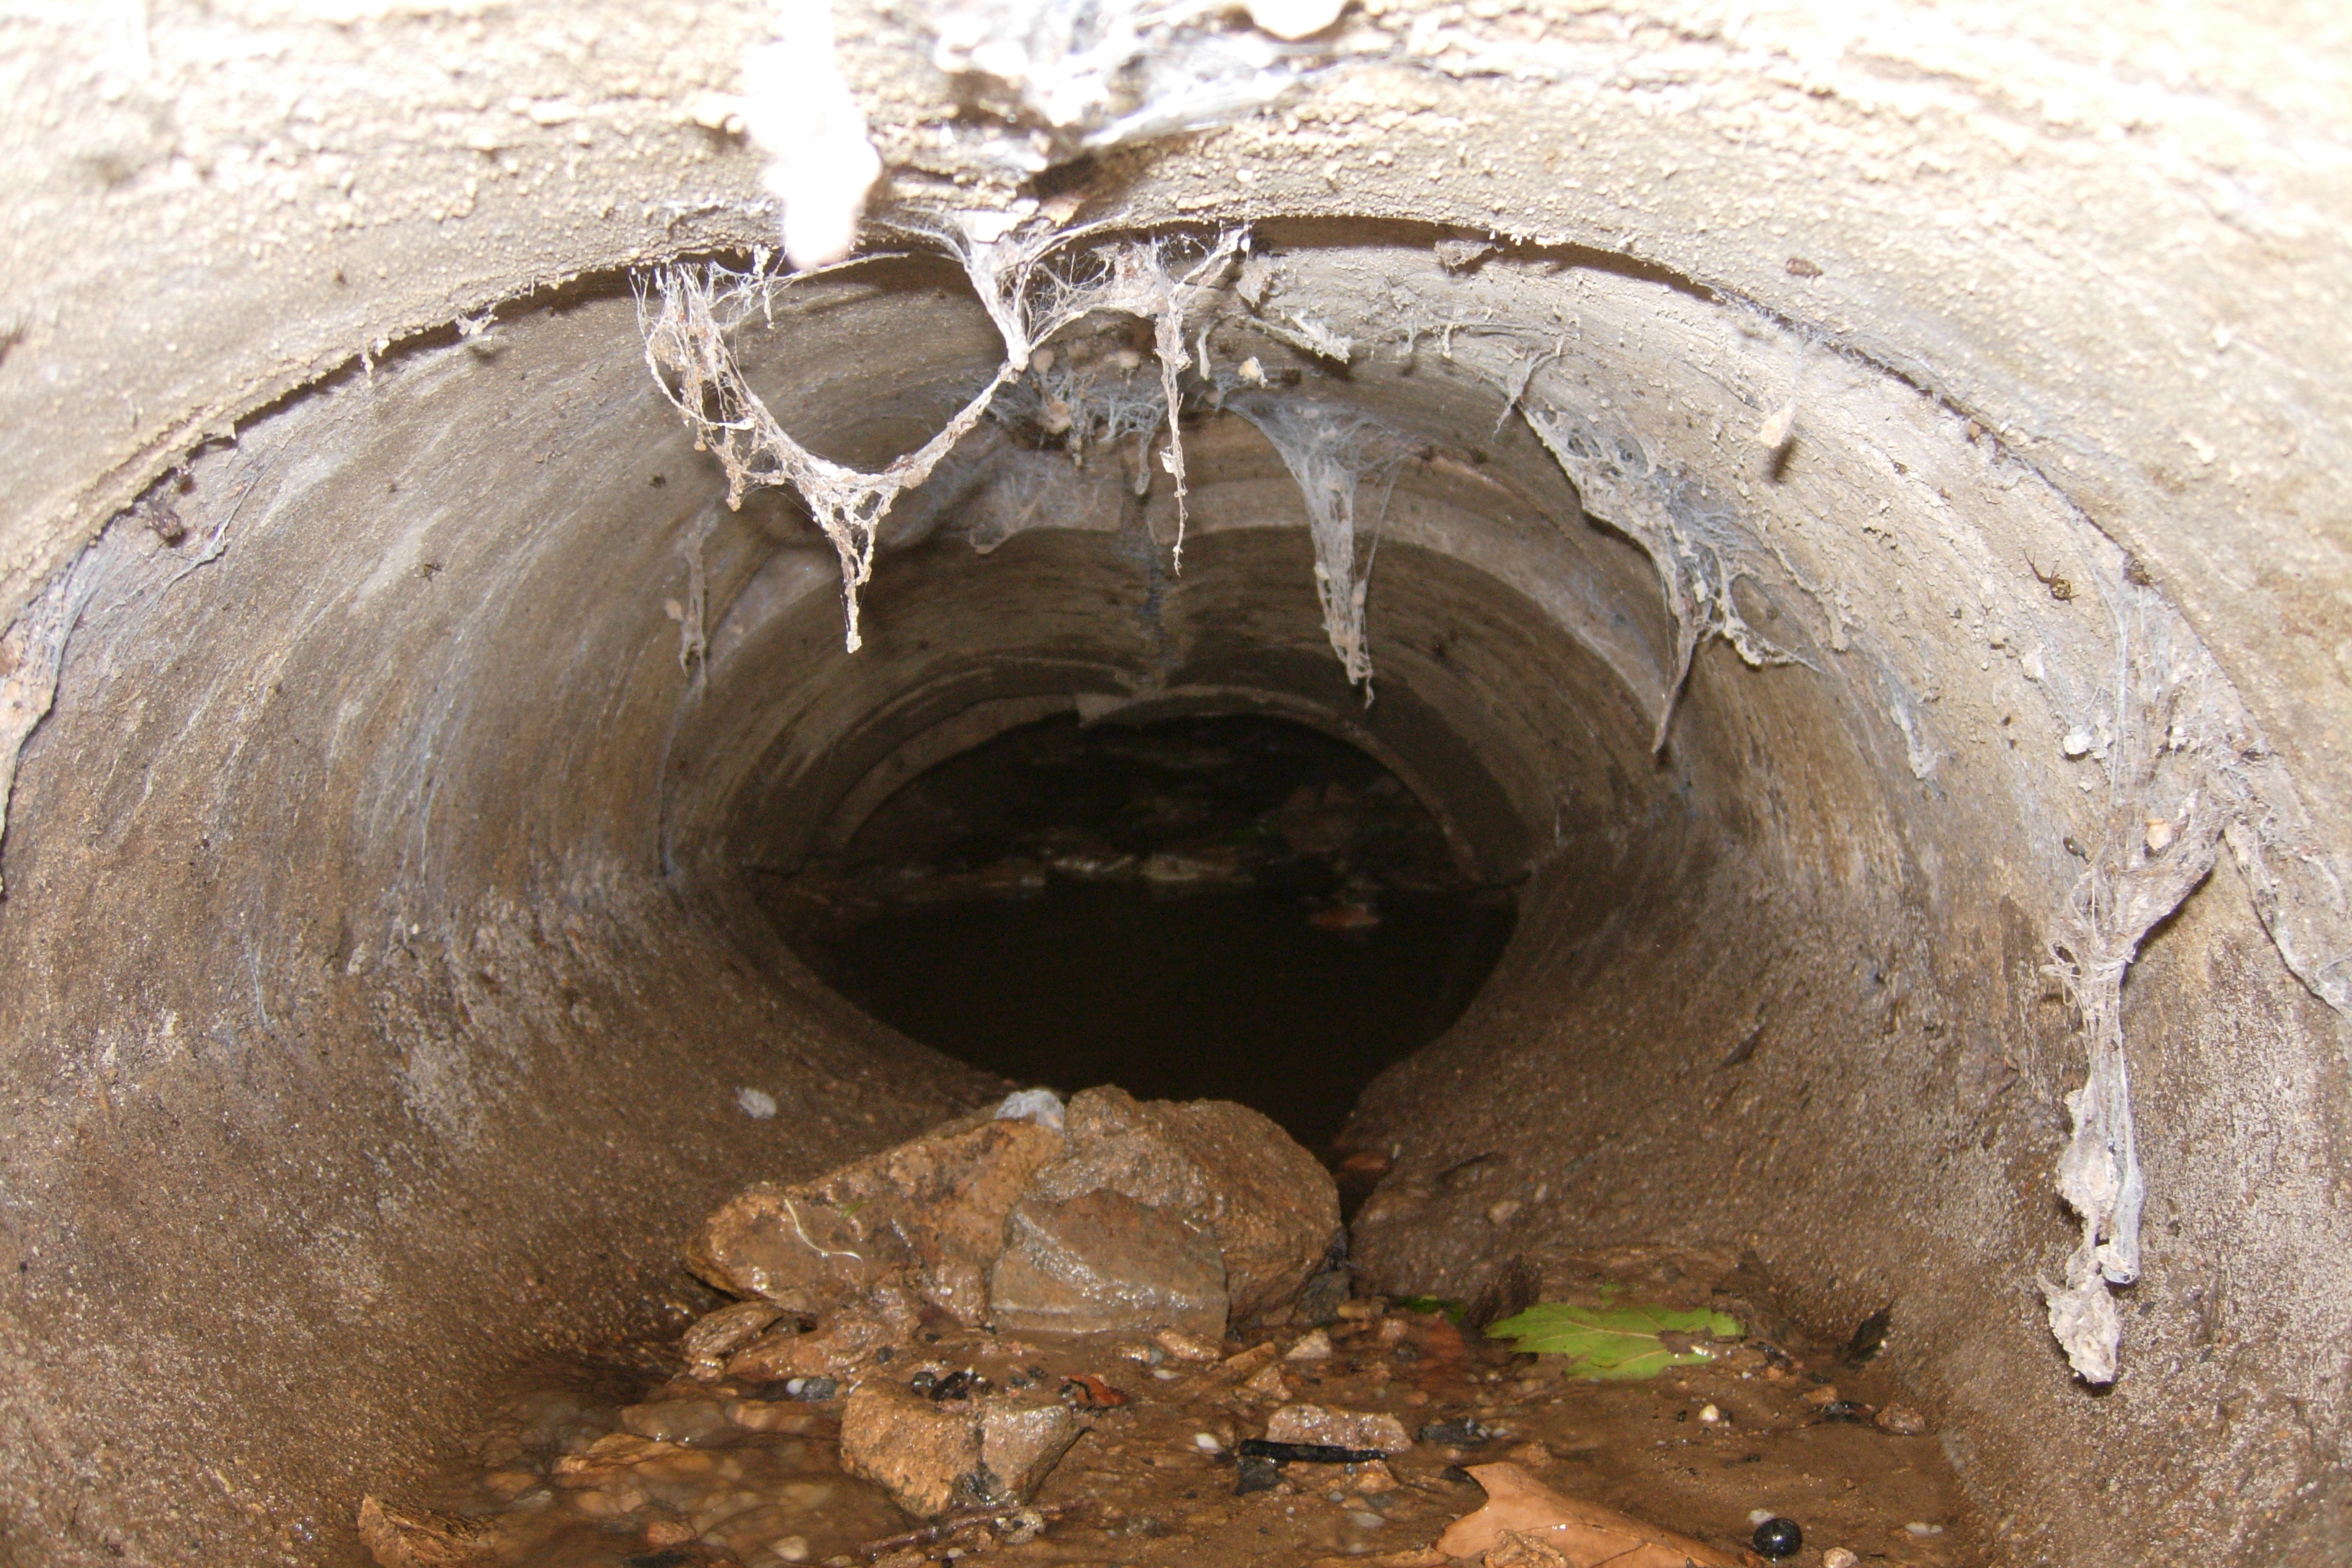 Oprava poškozené kanalizace po přívalových deštích 2014 v obce Tažovice